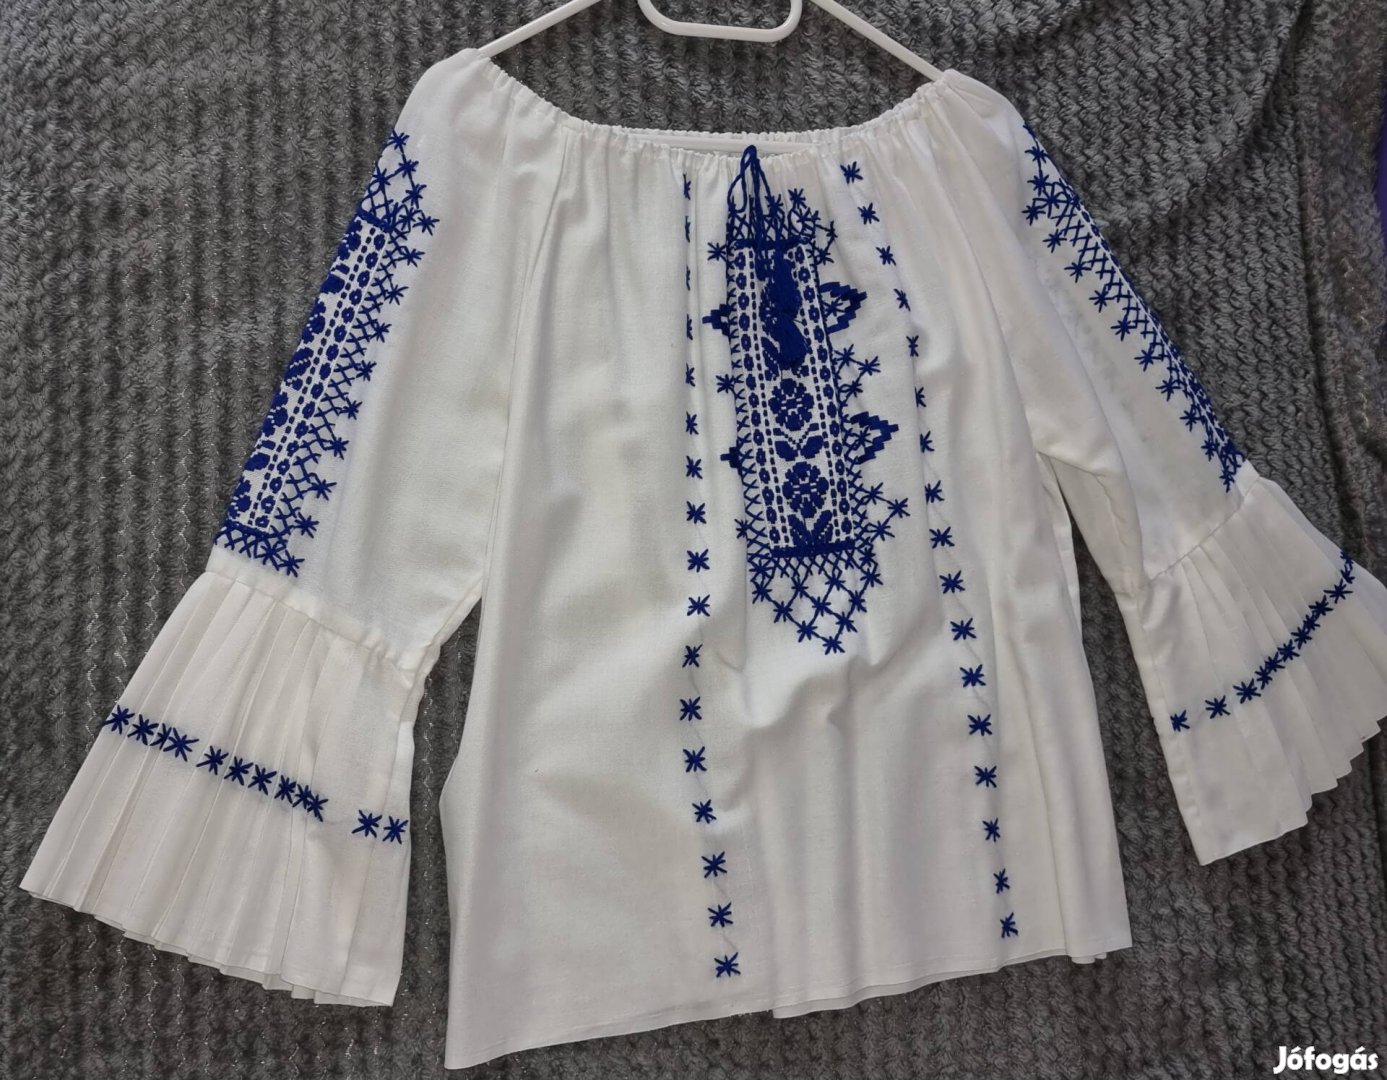 Fehér blúz ing női kék híméssel.Néptáncos viselet volt.Egyedi darab. 